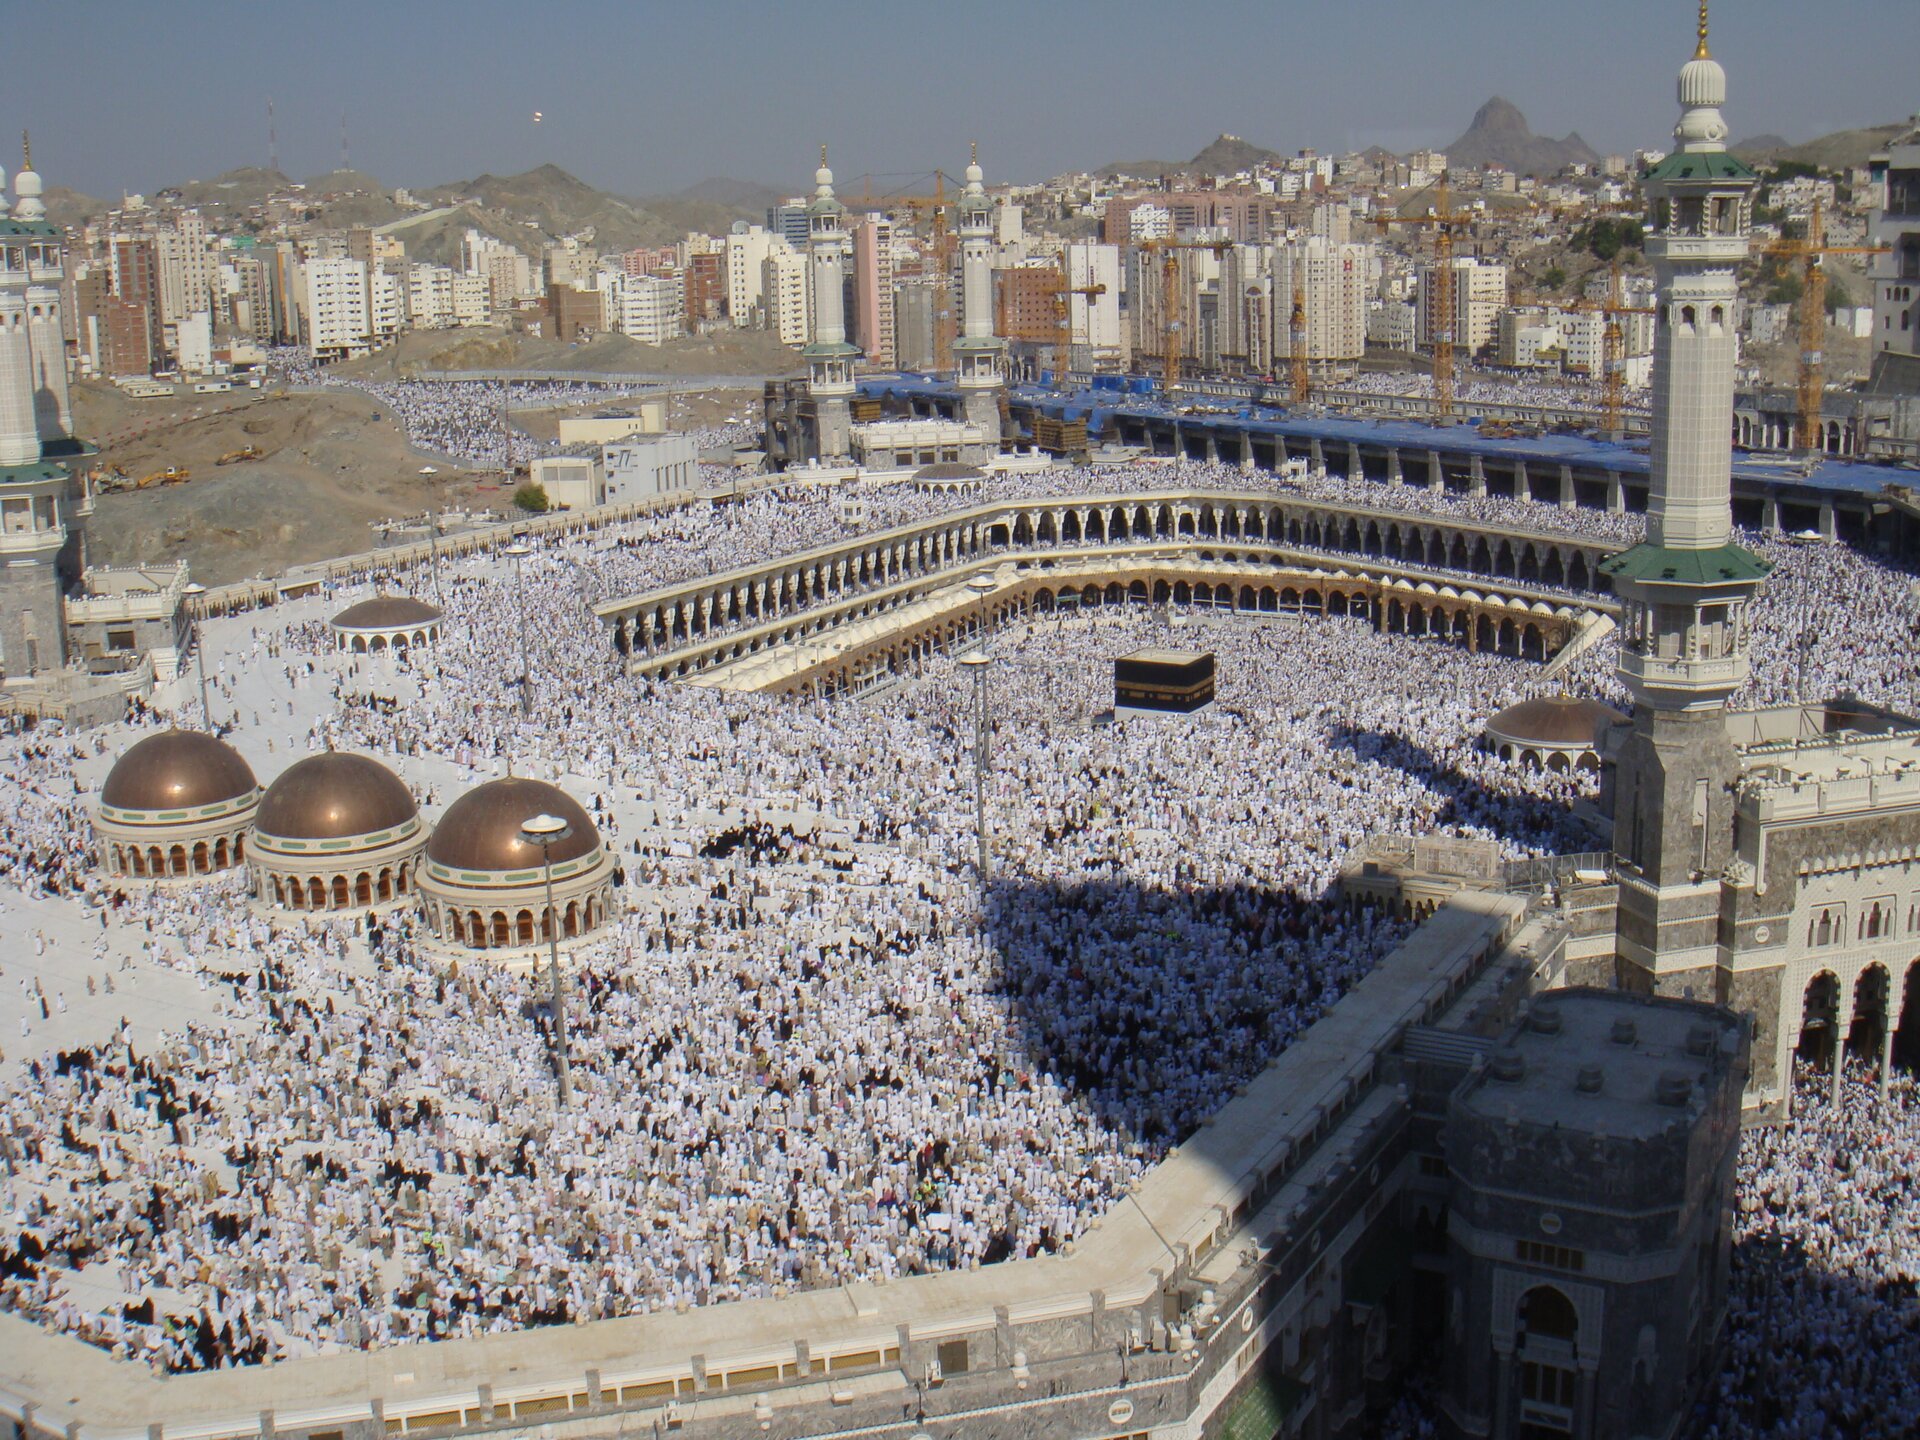 Zdjęcie przedstawia świątynię islamską z charakterystyczną wysoką wieżą, z której zwoływani są na modlitwę wierni. Przed nią oraz na jej dziedzińcu znajdują się tysiące modlących się ludzi.